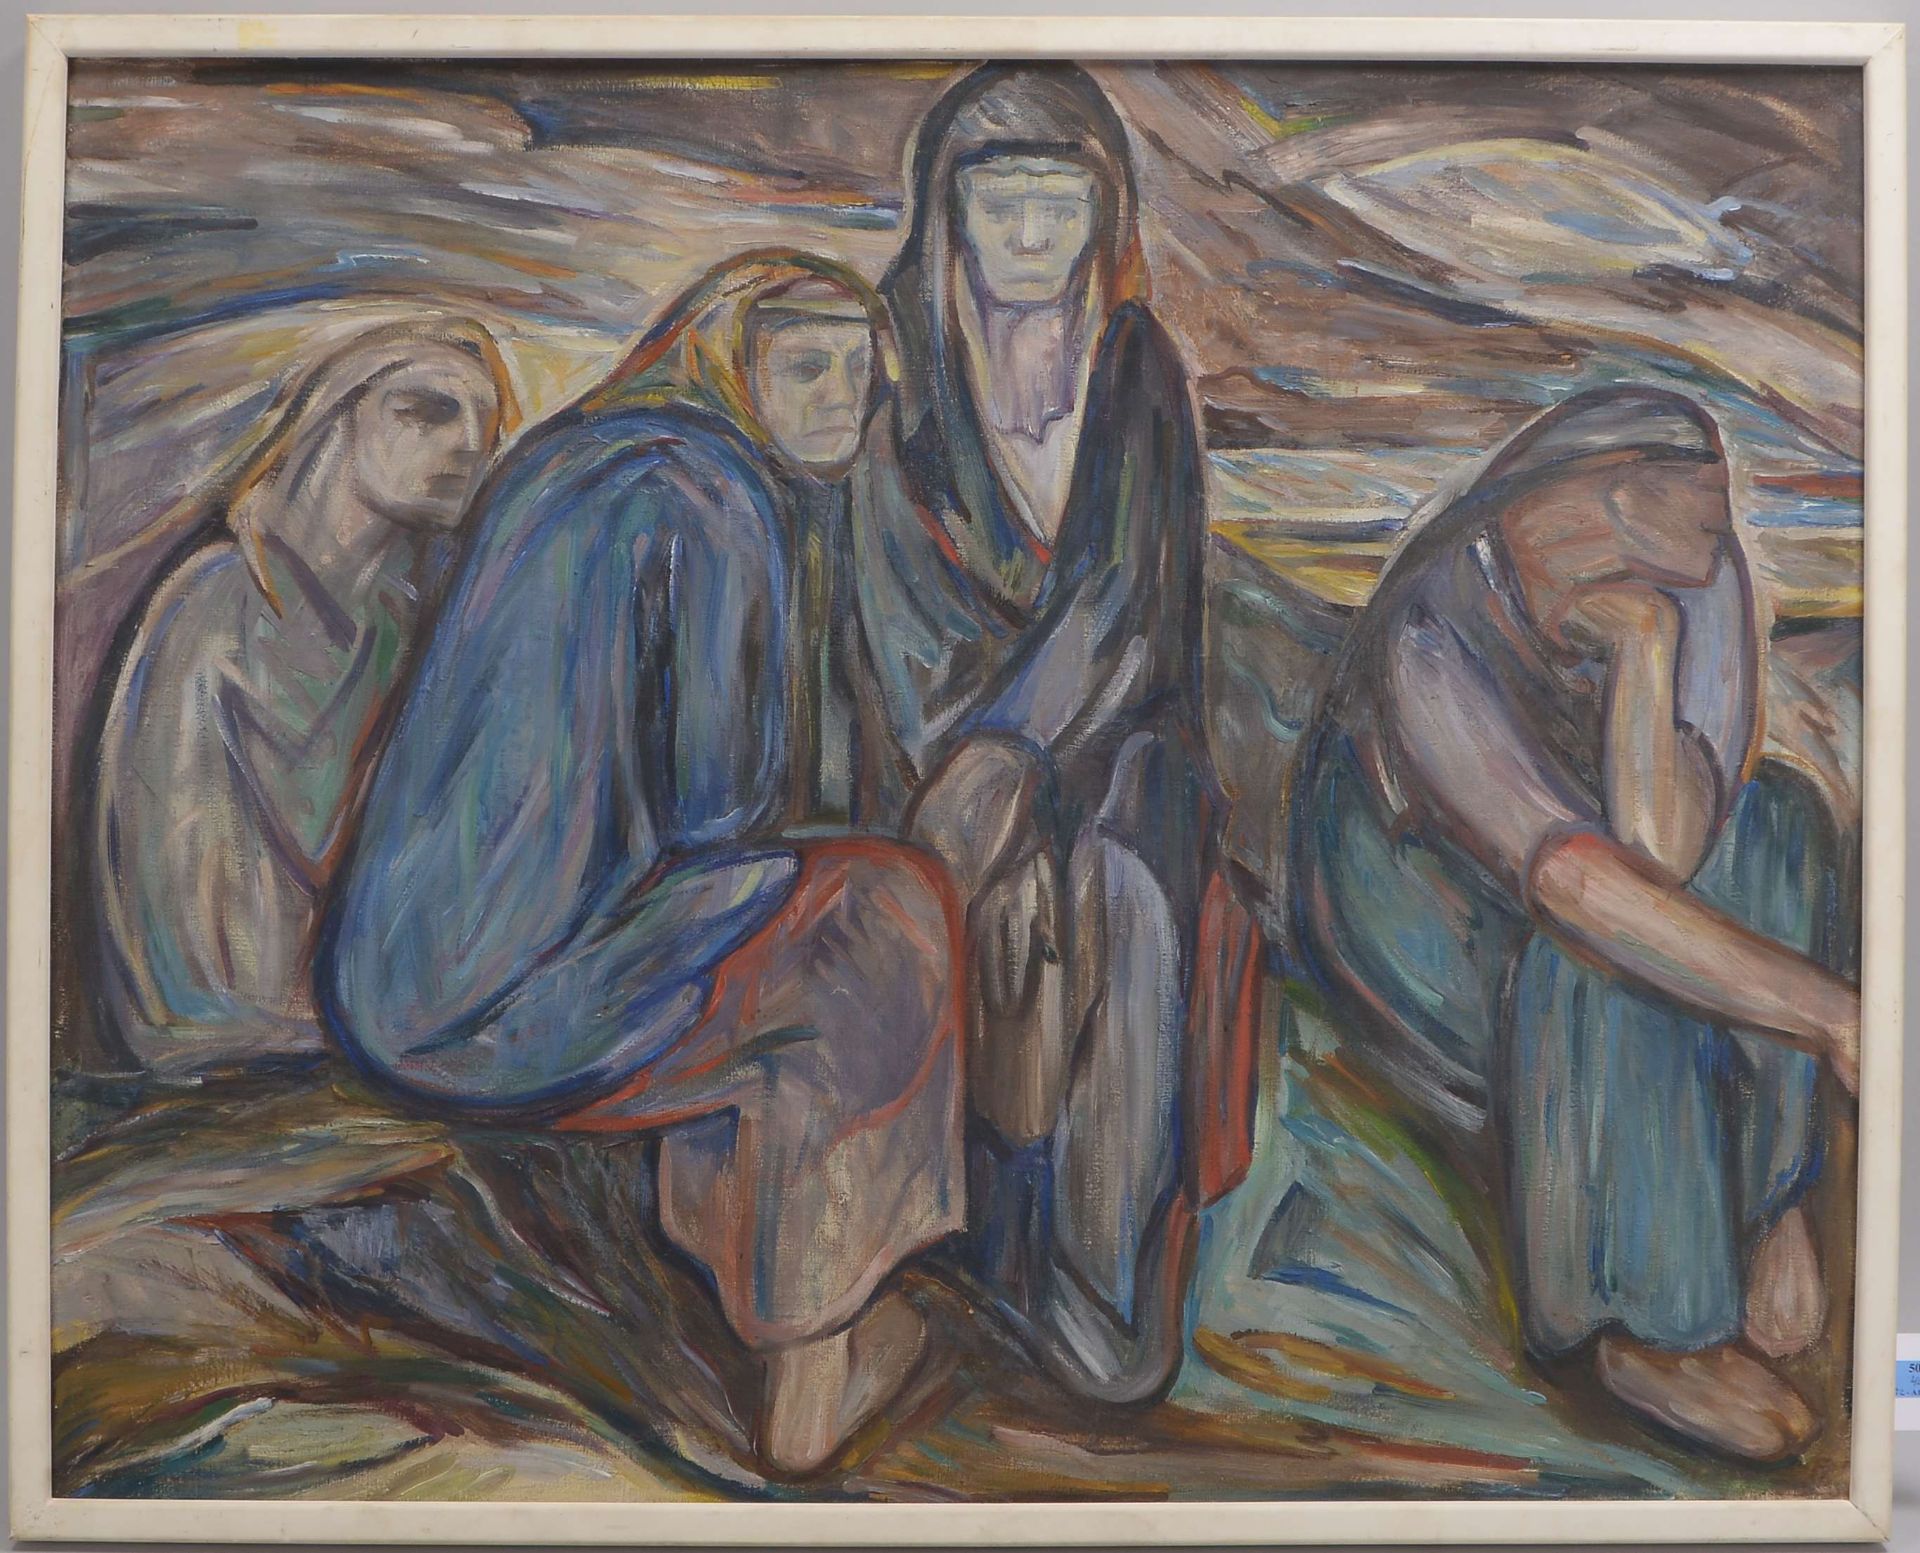 Gemälde, 'Frauen in Trauer', Öl/Lw, unsigniert; Bildmaße 80,5 x 100,5 cm